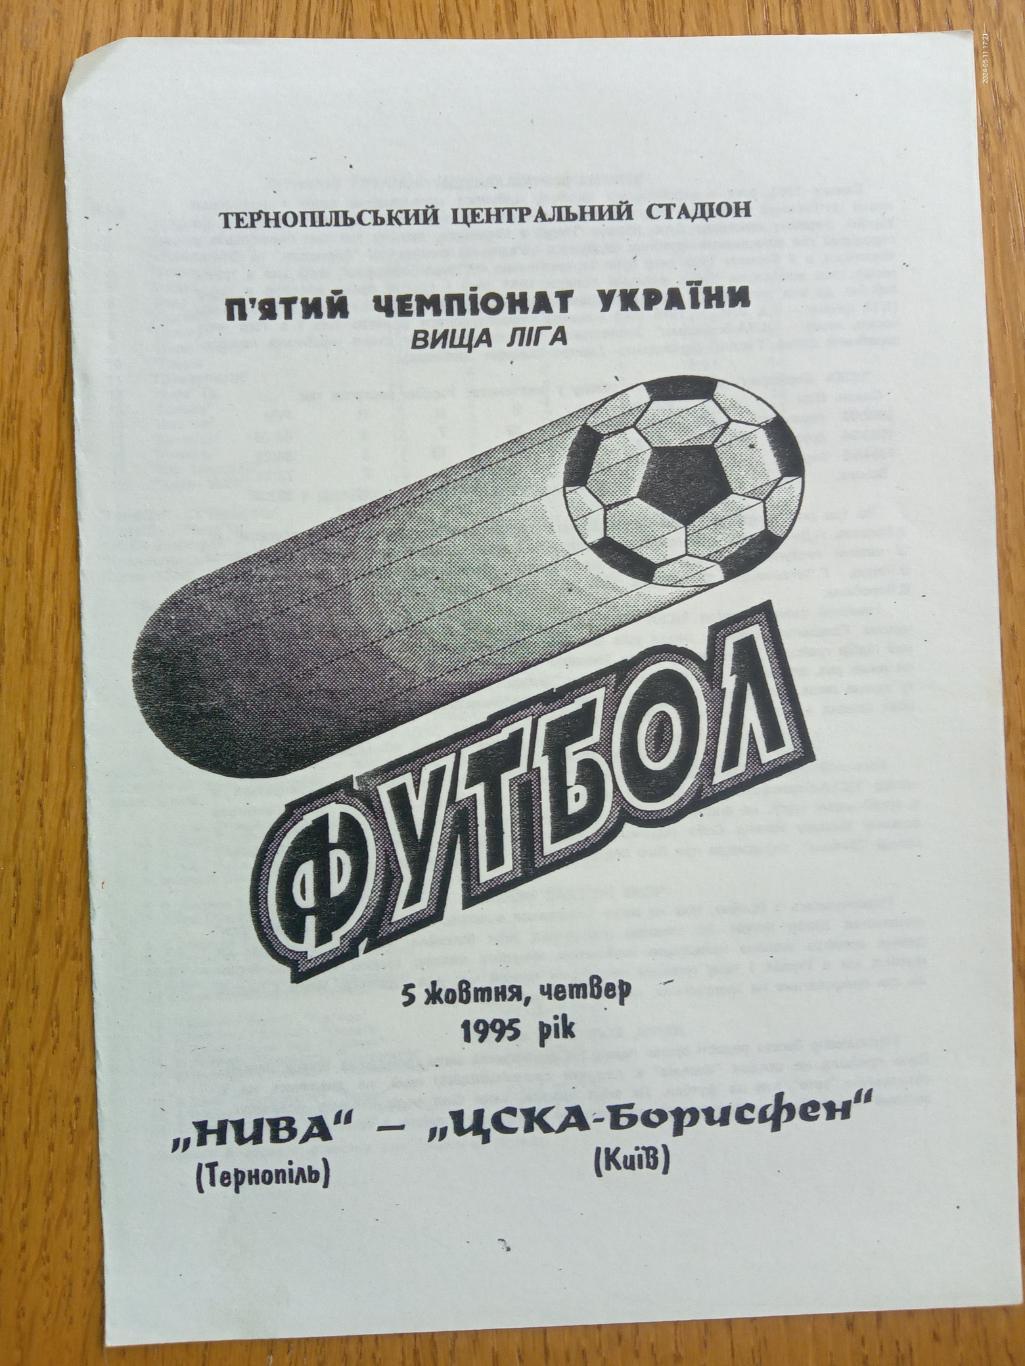 Нива Тернопіль - ЦСКА Борисфен. 05.10.1995.#.м.